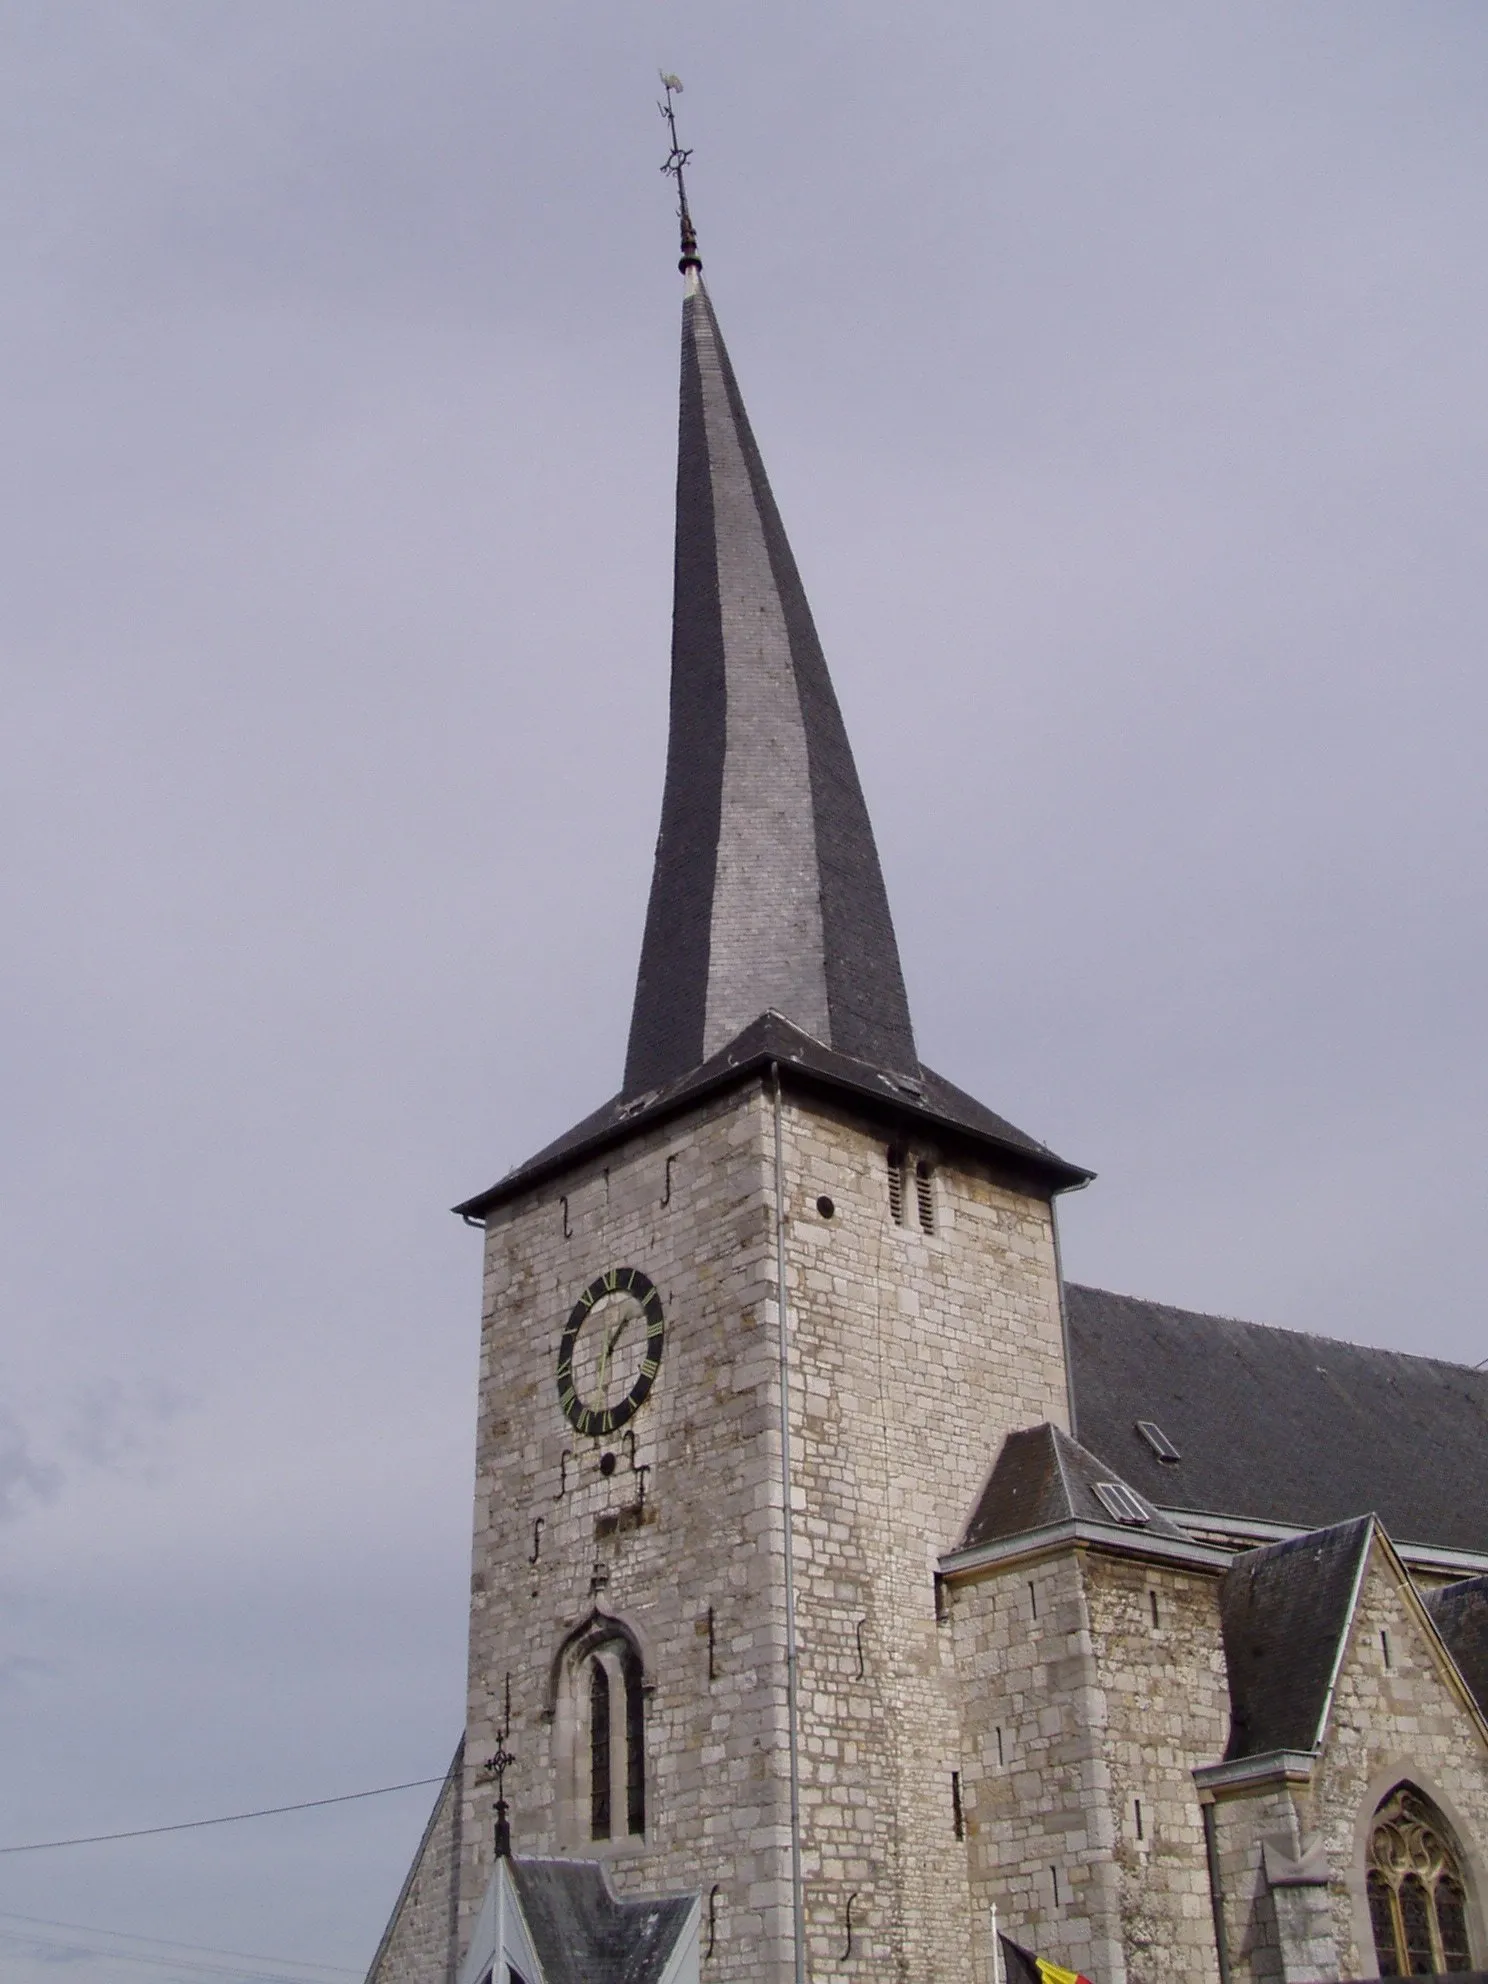 Photo showing: photographie du clocher tors de l'église de Goé (commune de Limbourg) (Belgique), prise par Accrochoc, le 1er octobre 2006.